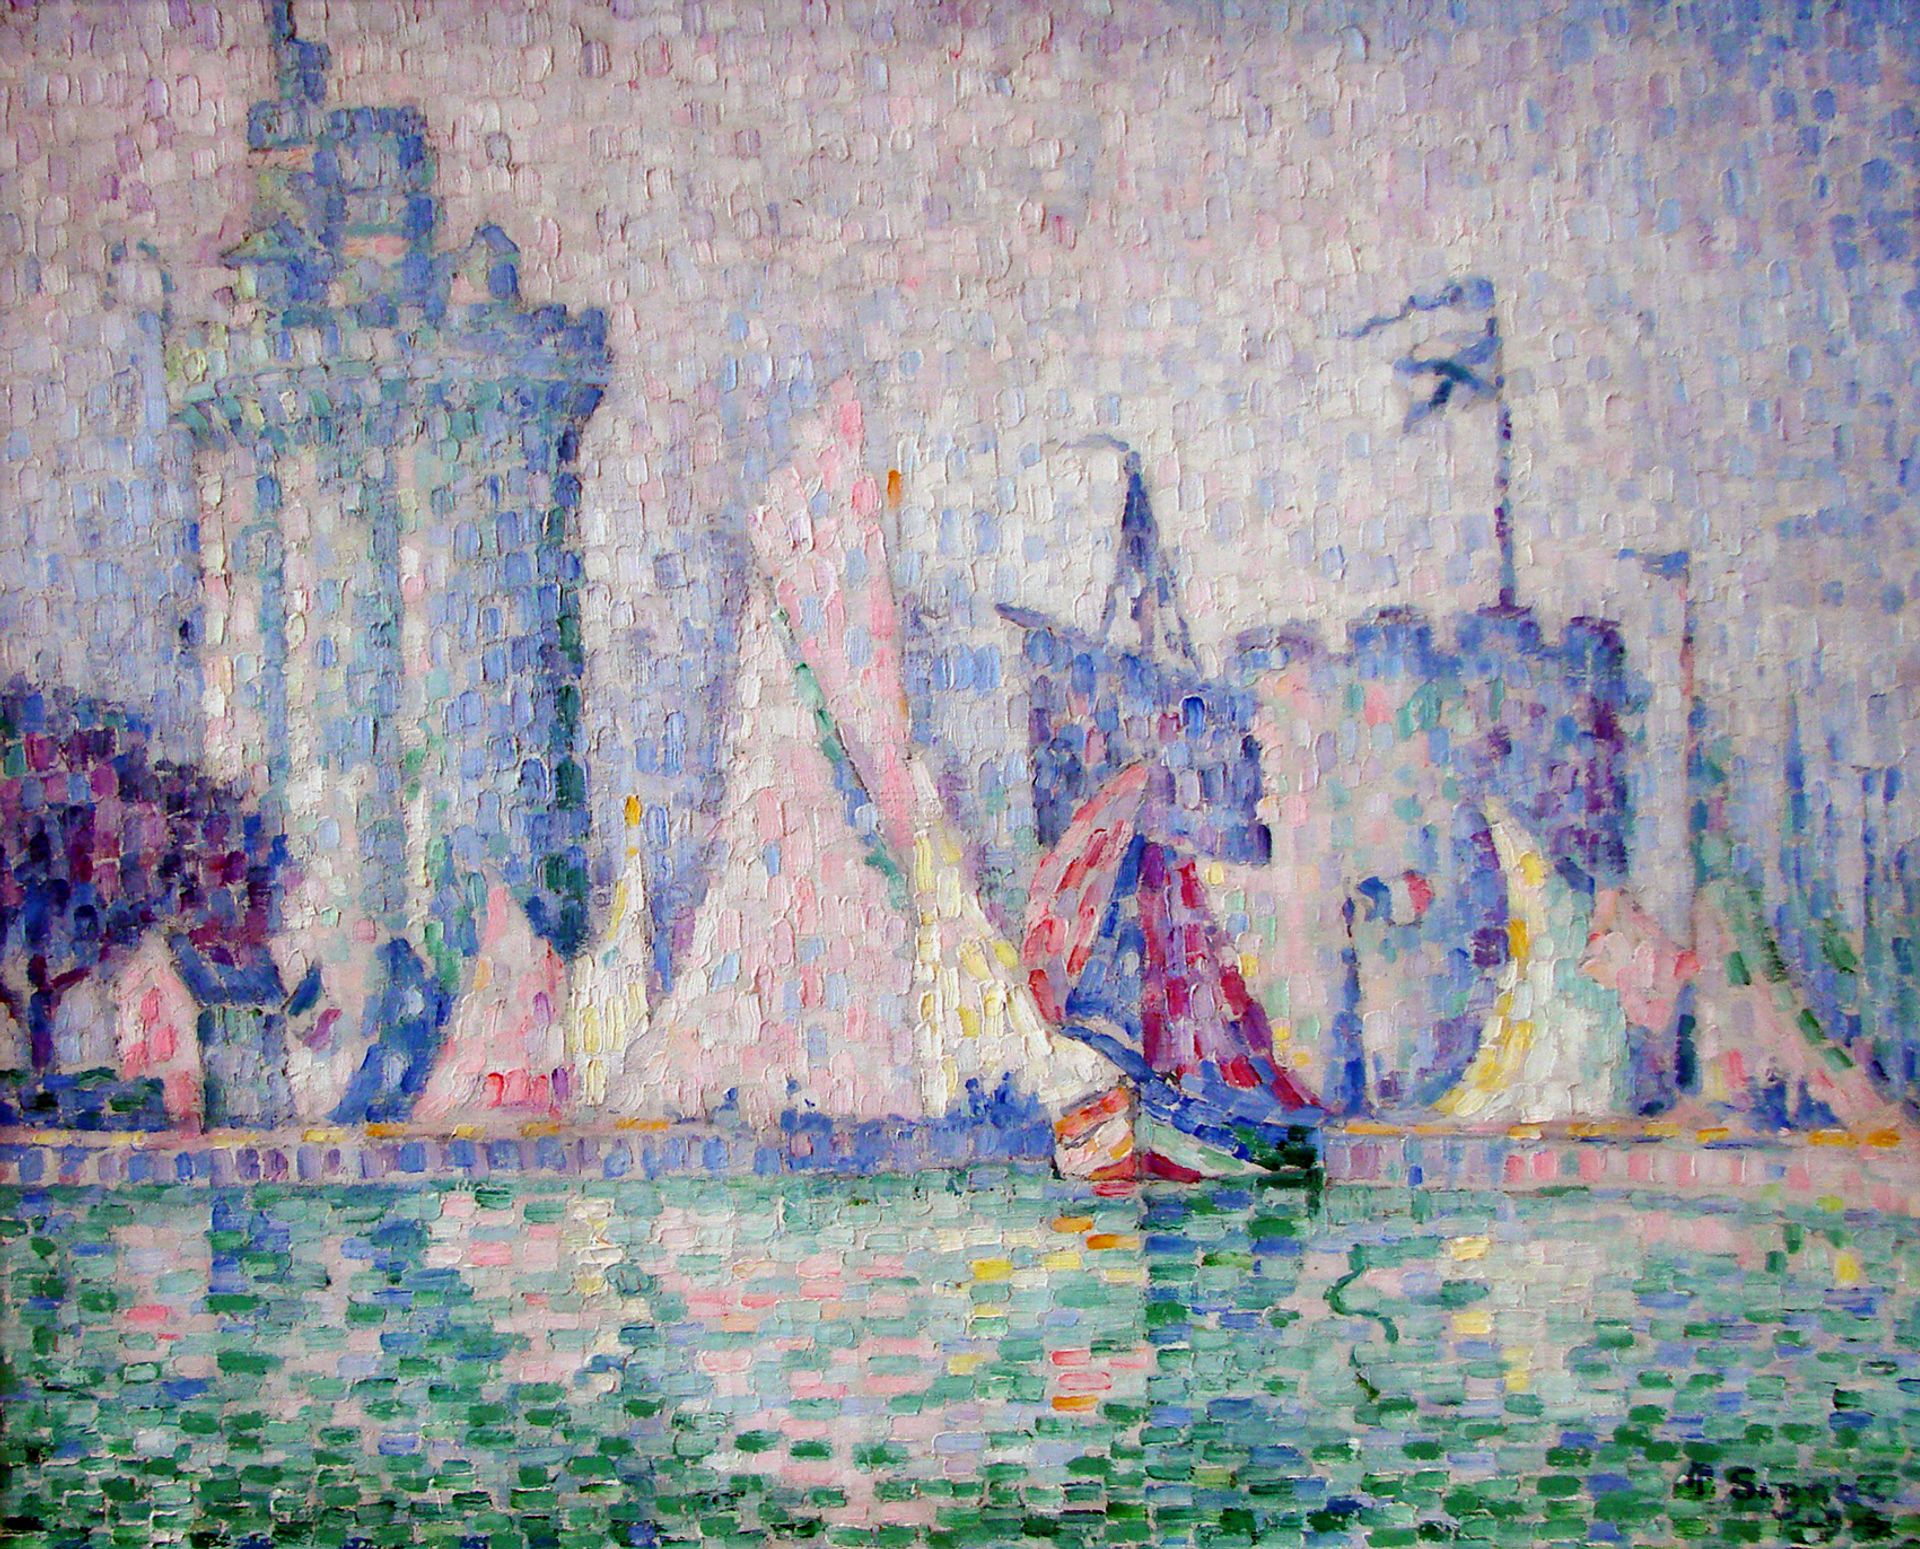 Paul Signac's Le Port de La Rochelle (1915)